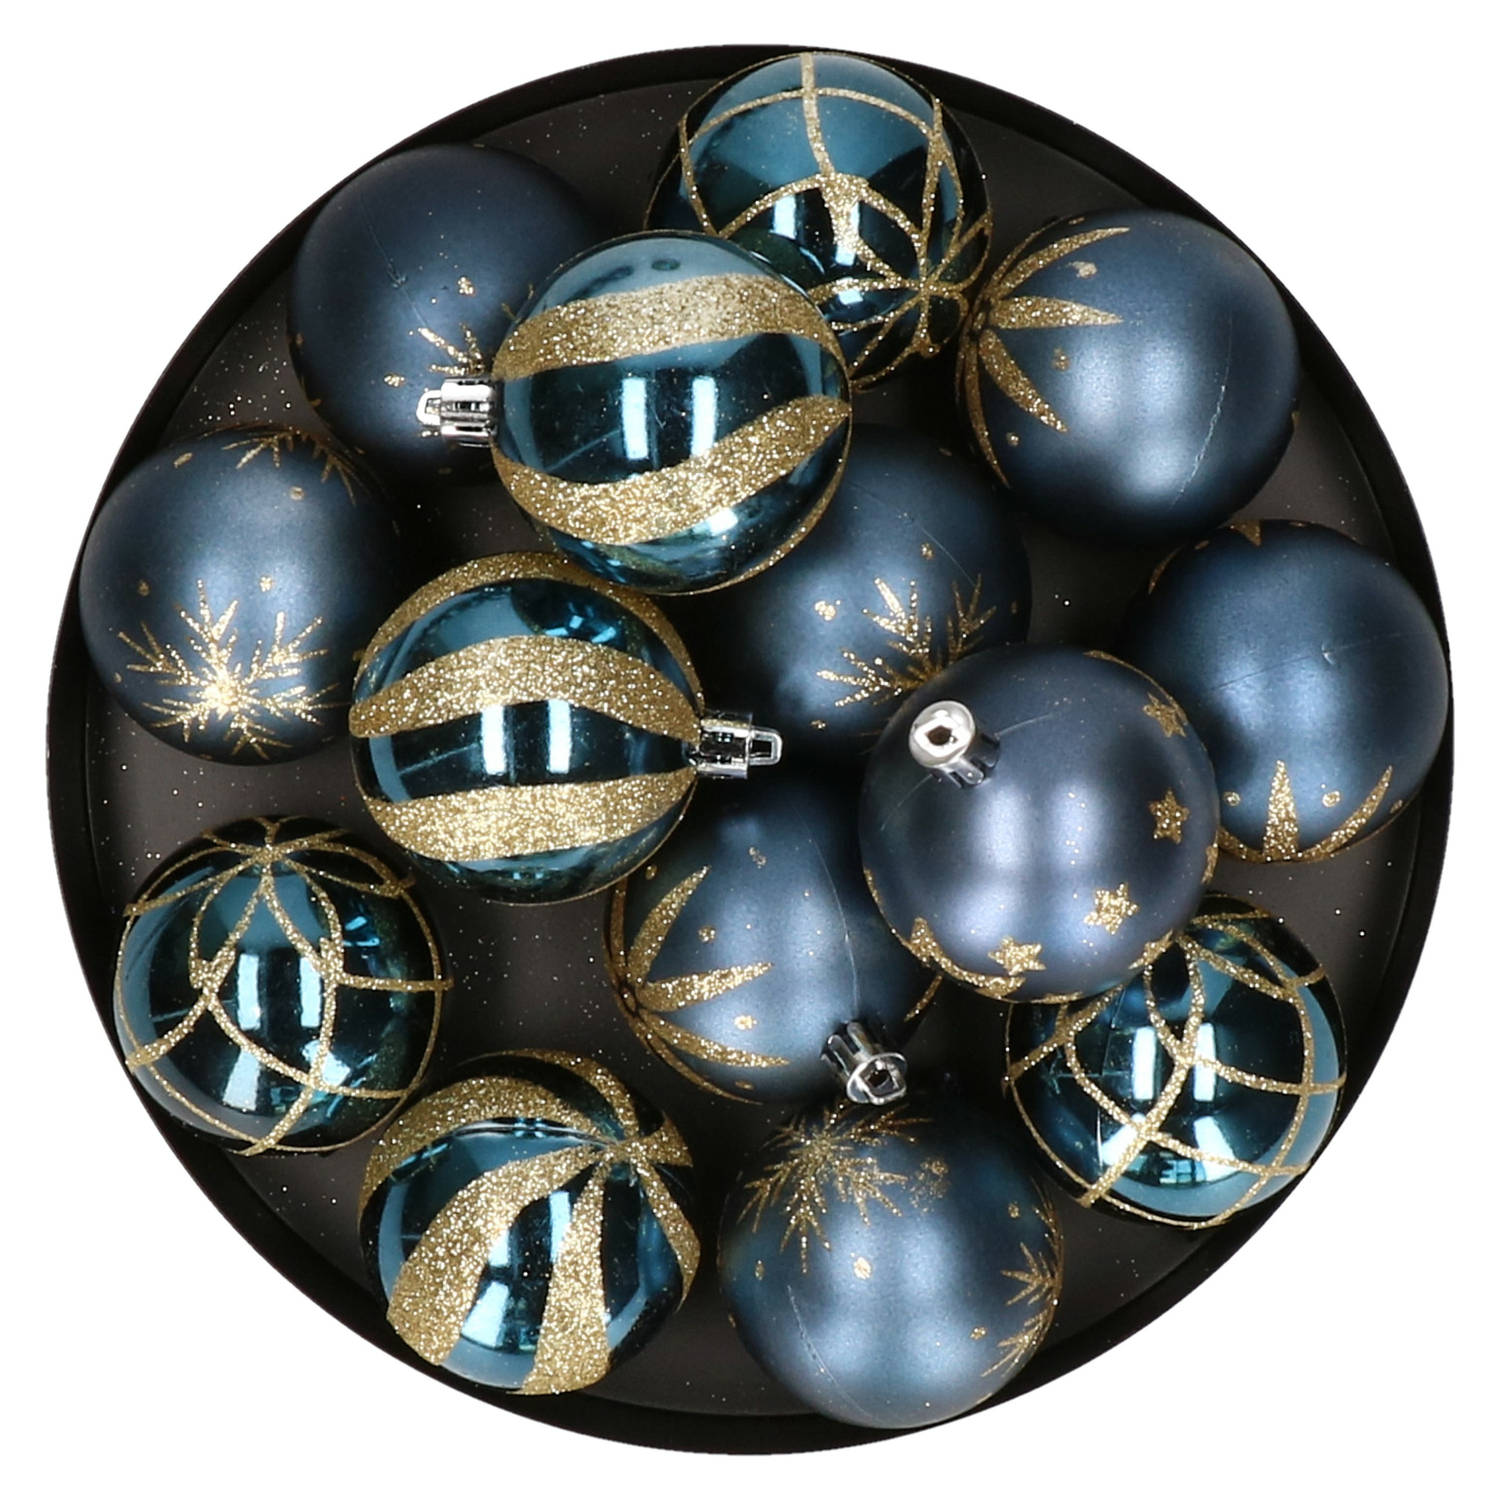 Feeric Christmas gedecoreerde kerstballen 25x- 6 cm - blauw -kunststofi¿½ - Kerstbal